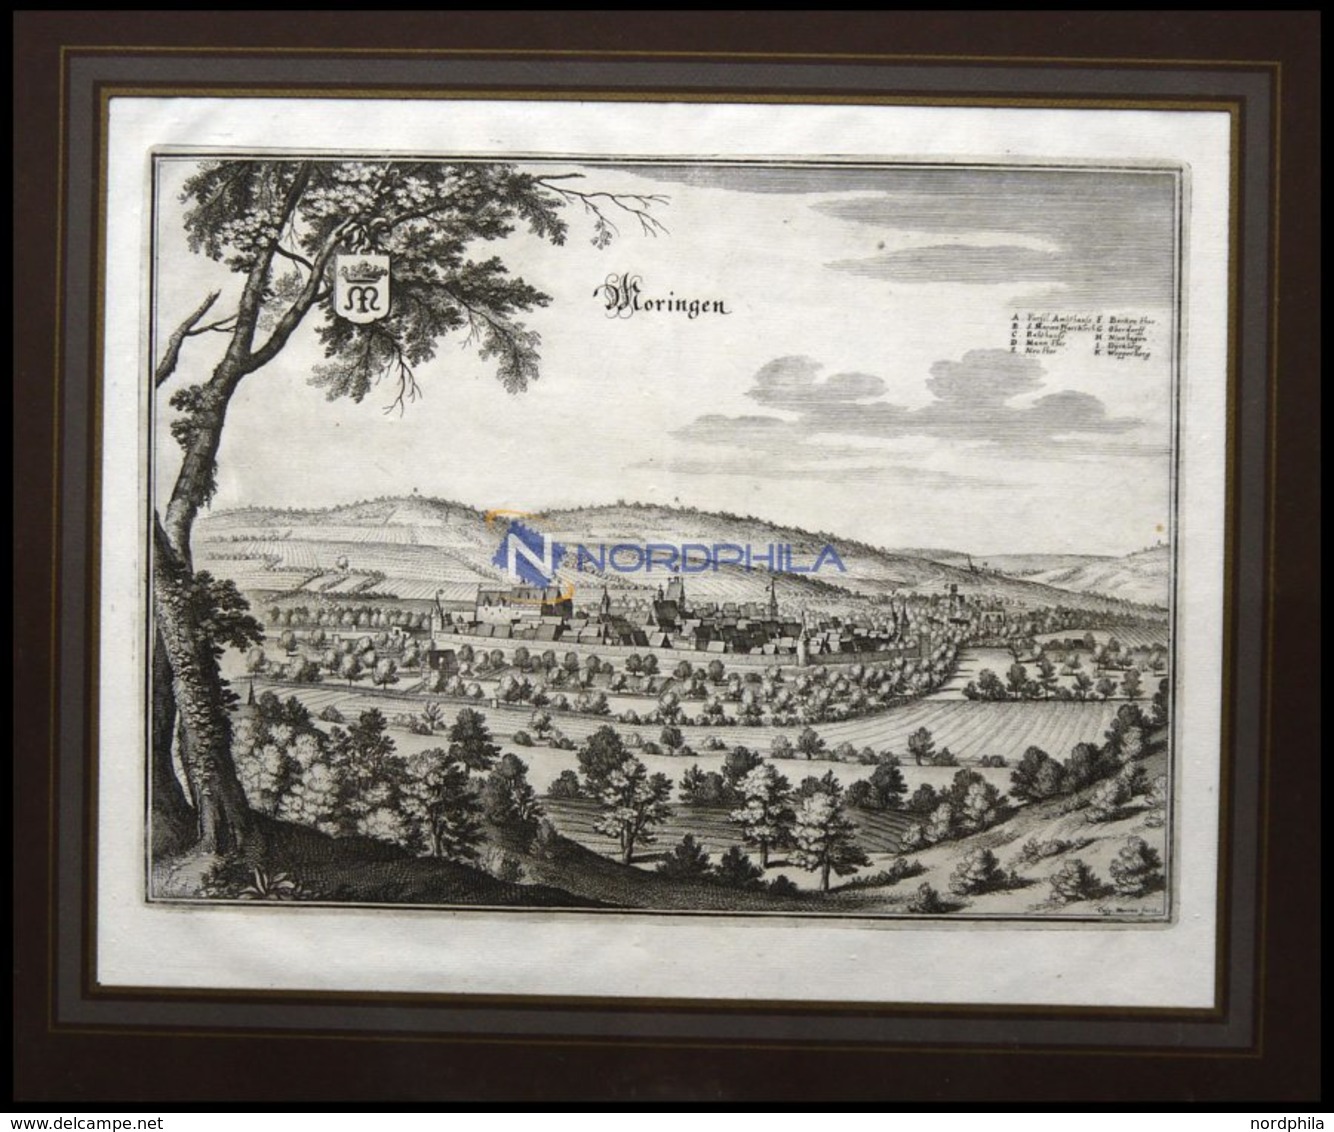 MORINGEN, Gesamtansicht, Kupferstich Von Merian Um 1645 - Litografía